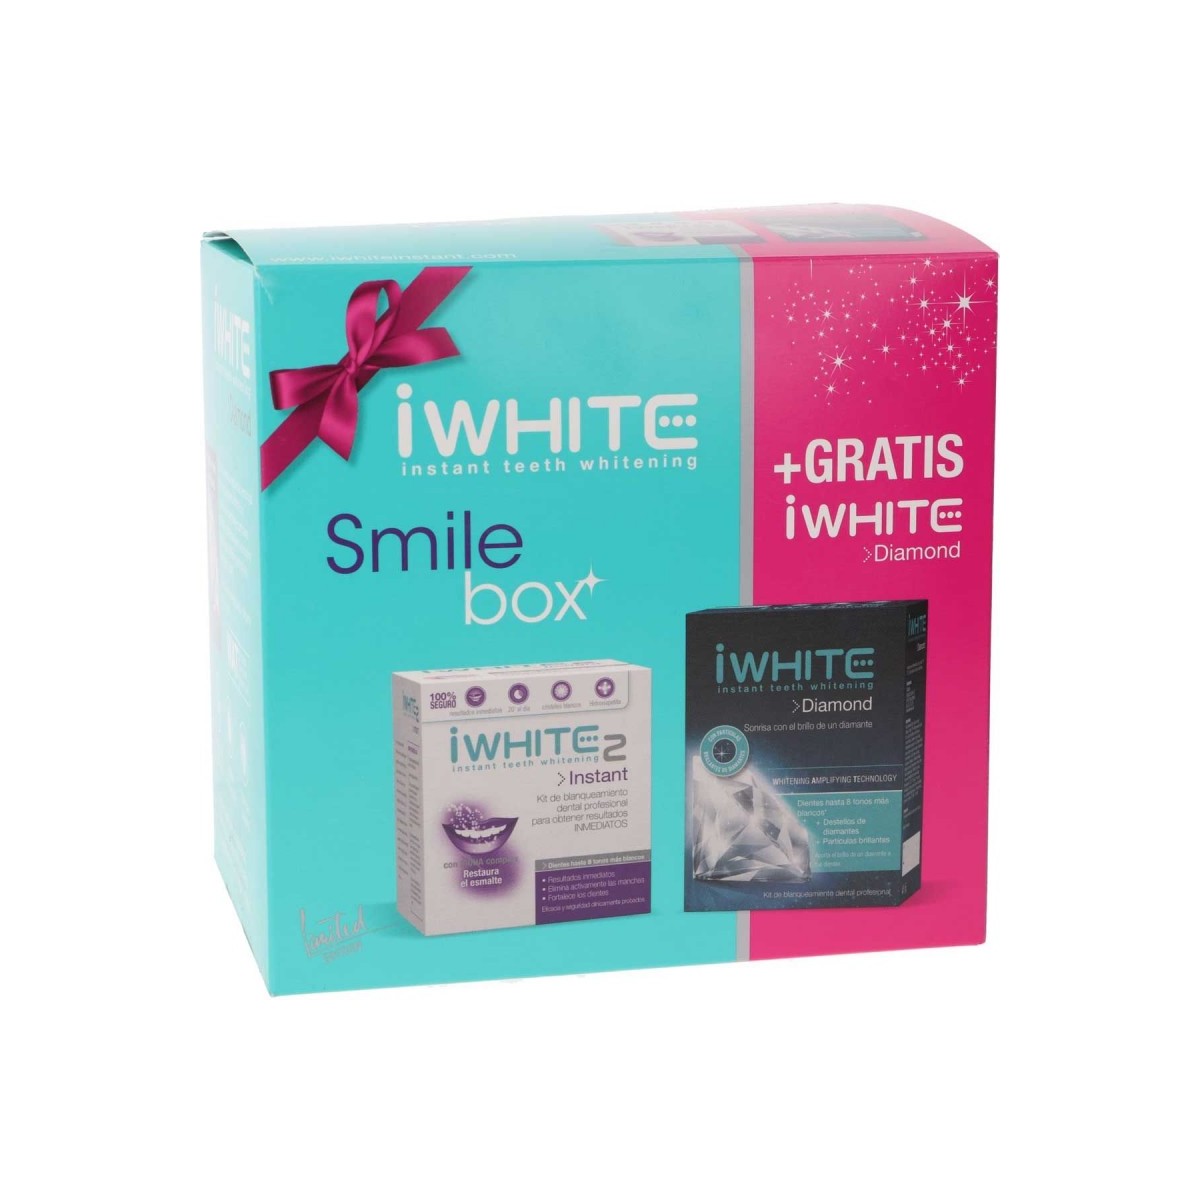 iWhite Smile Box